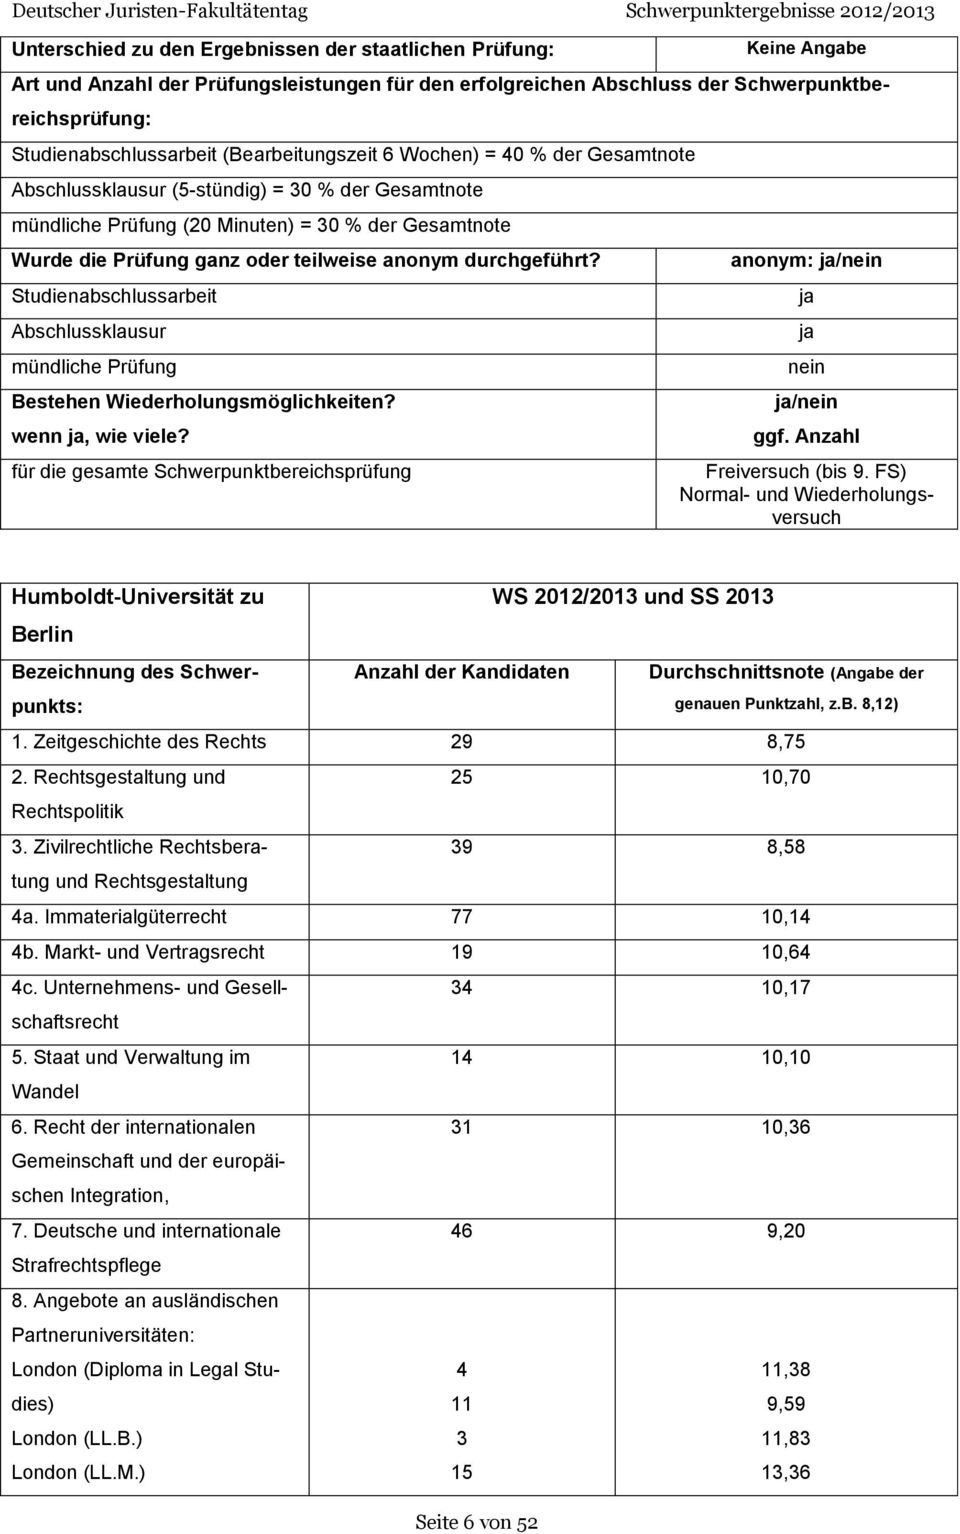 FS) Normal- und Wiederholungsversuch Humboldt-Universität zu WS 2012/2013 und SS 2013 Berlin Anzahl der Kandidaten Durchschnittsnote (Angabe der 1. Zeitgeschichte des Rechts 29 8,75 2.